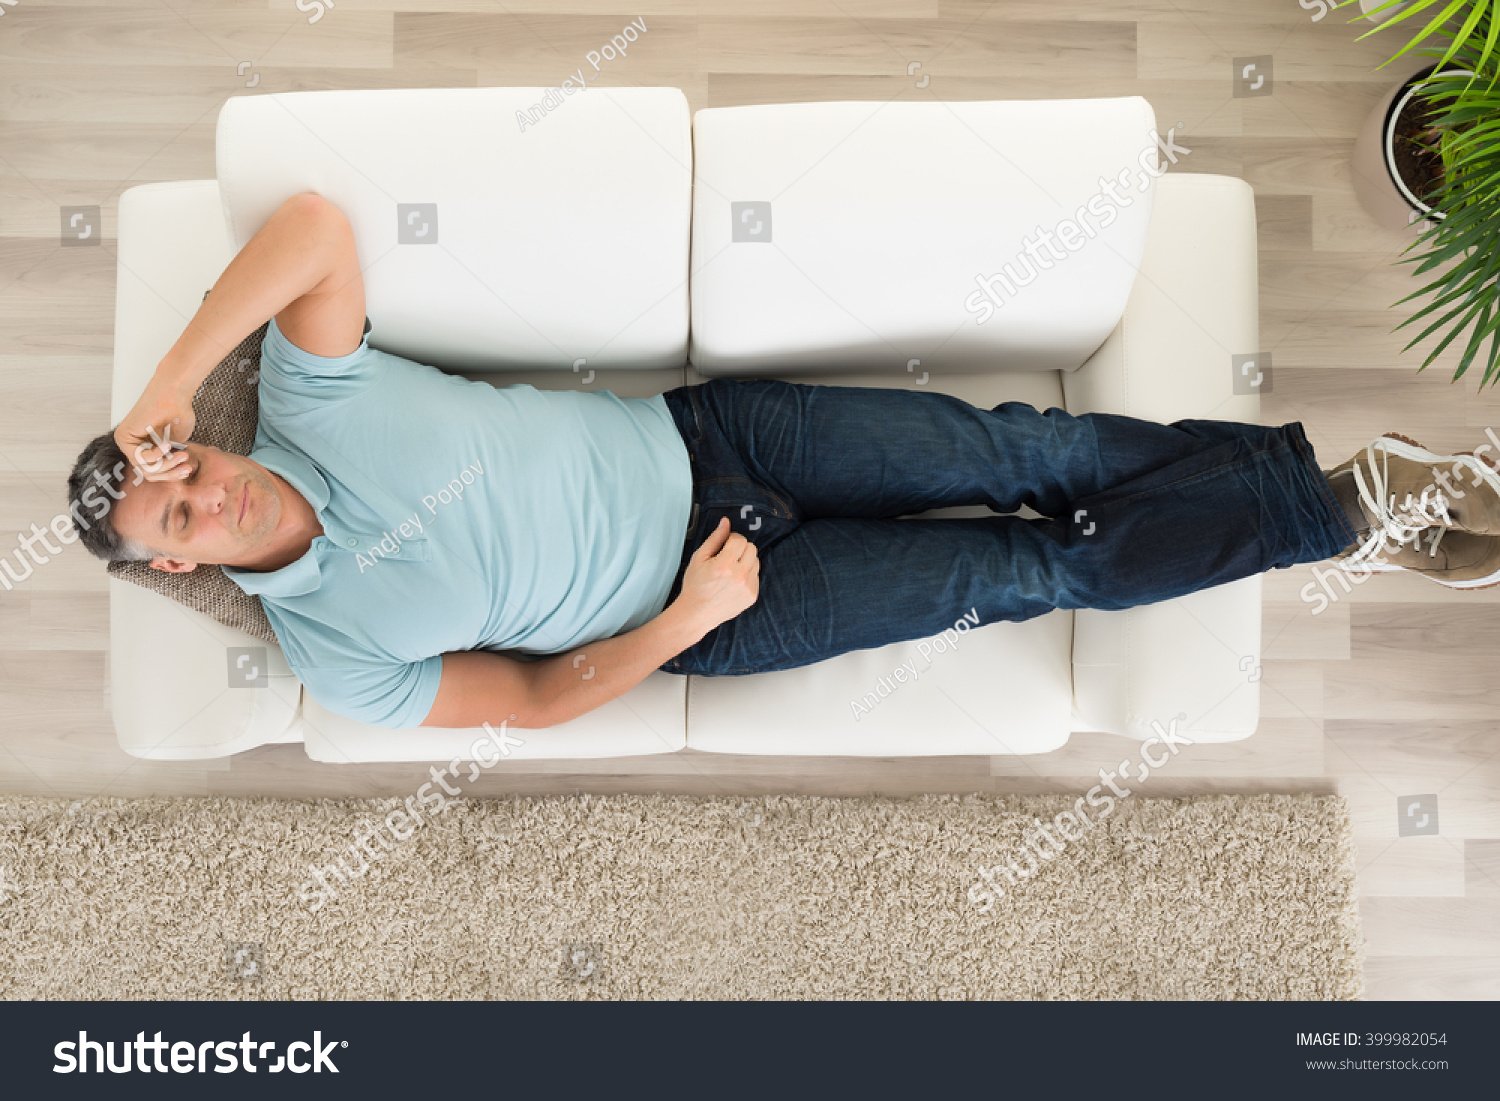 Asleep couch fan photos